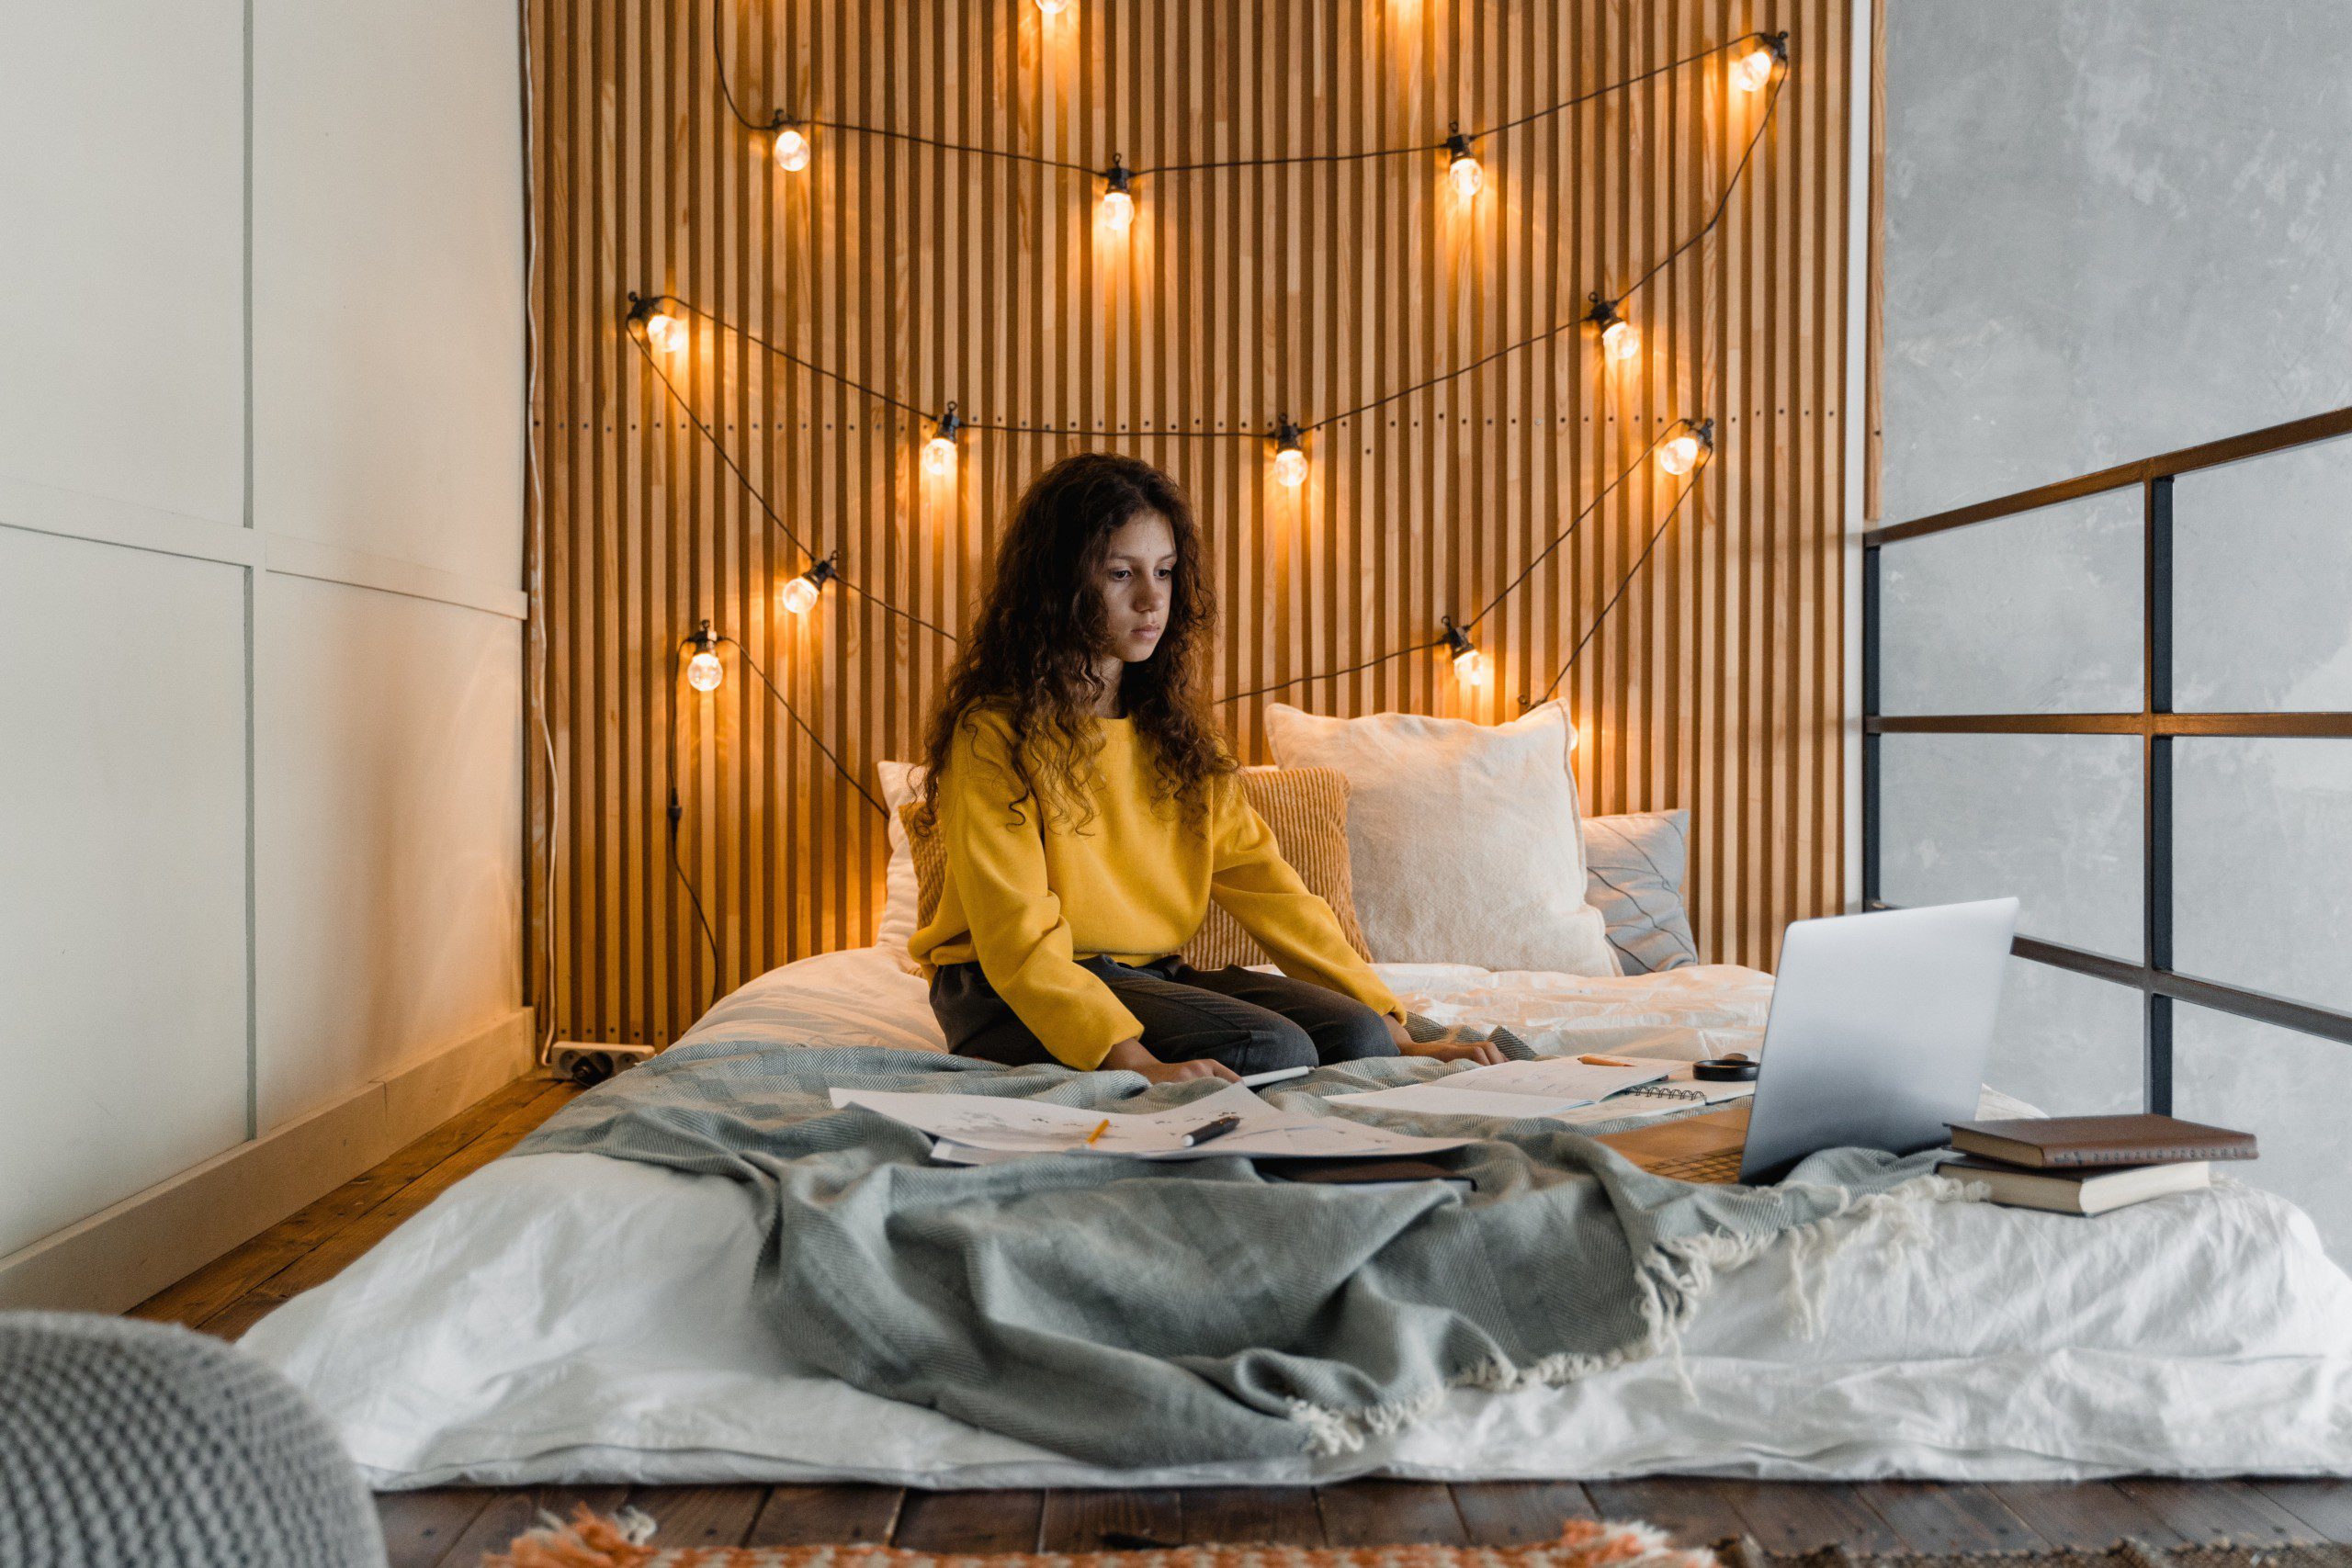 Imagem de um painel de madeira ripado com luzinhas instalado como cabeceira de cama.